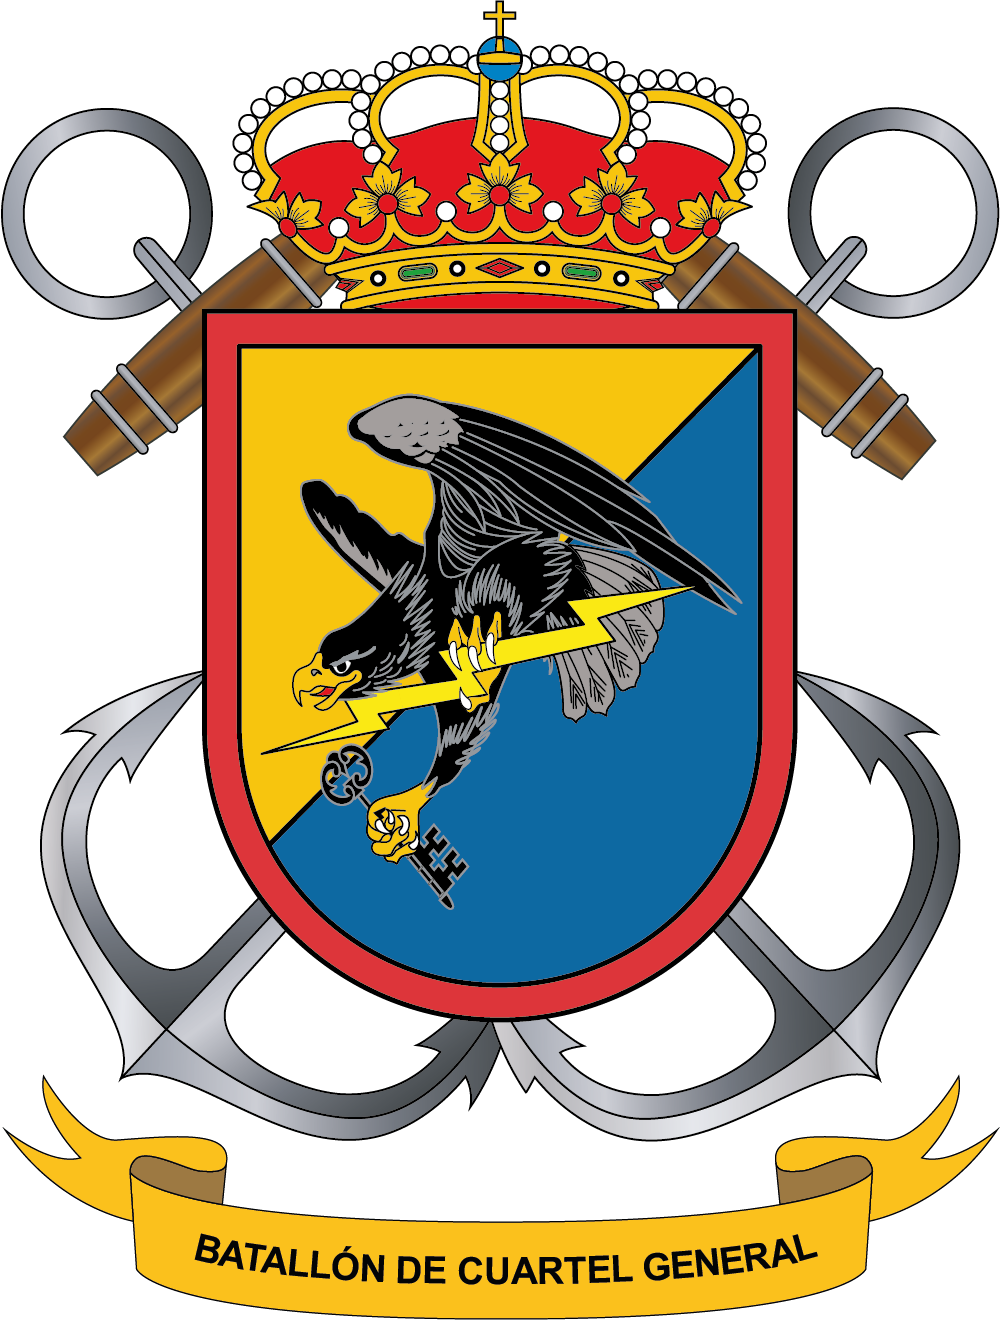 Escudo del Batallón de Cuartel General (BCG)
